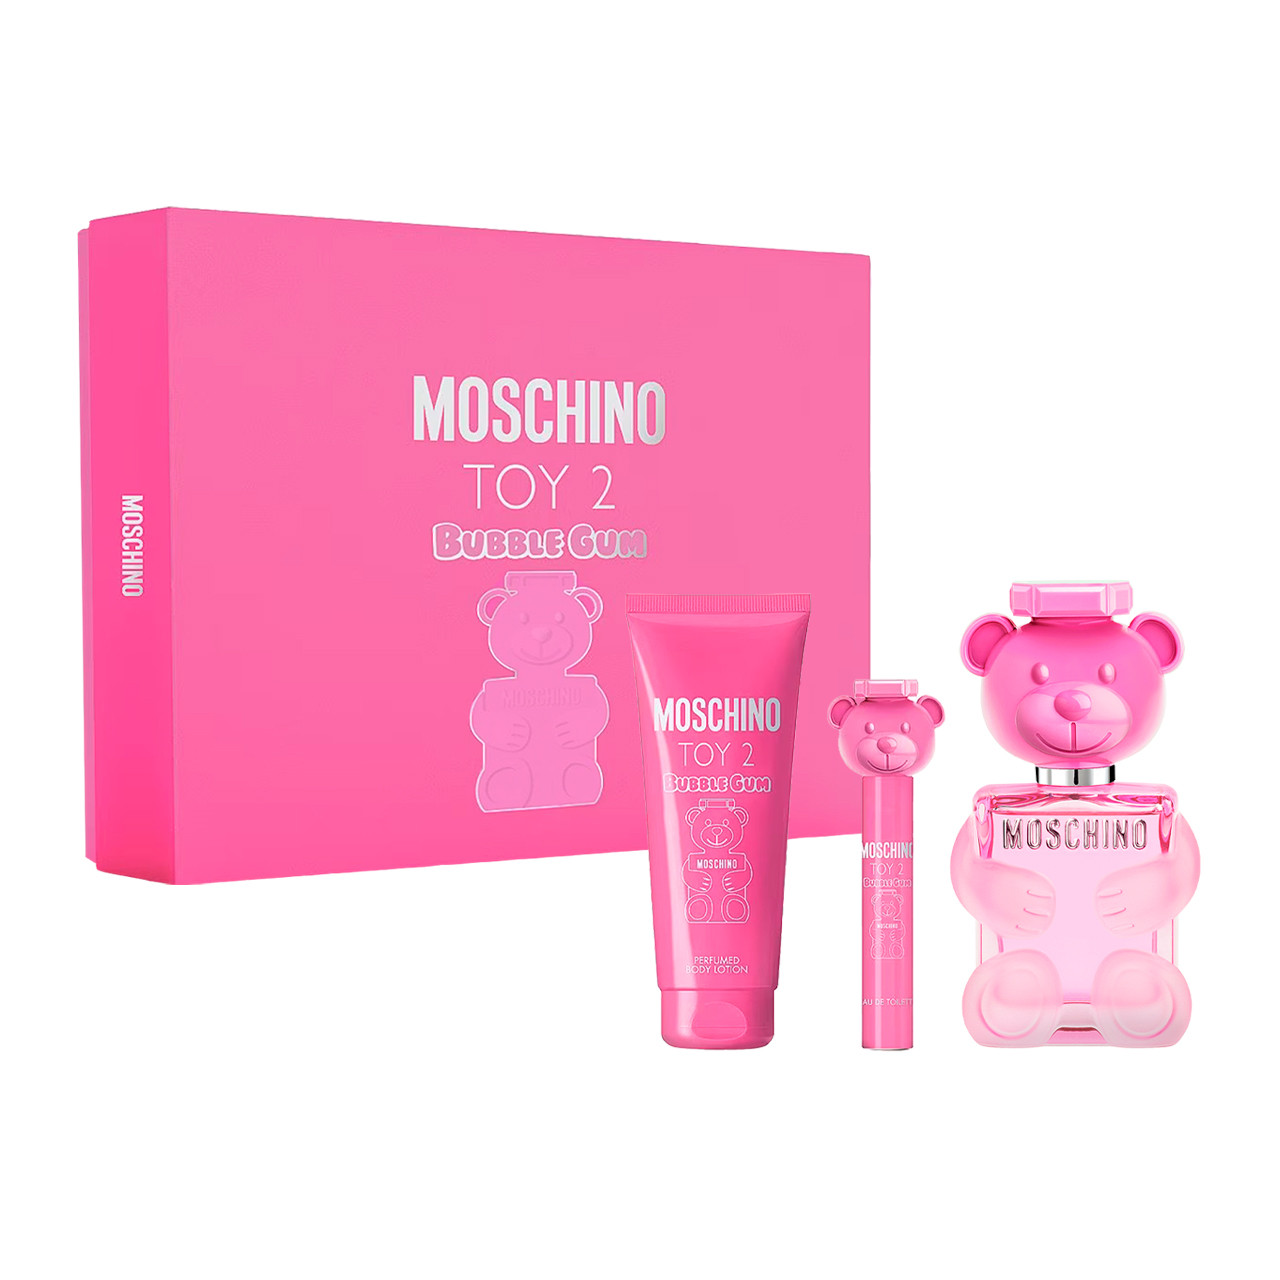 Moschino Toy 2 Bubble Gum Estuche 3 pzs Dama - Magna Perfumes